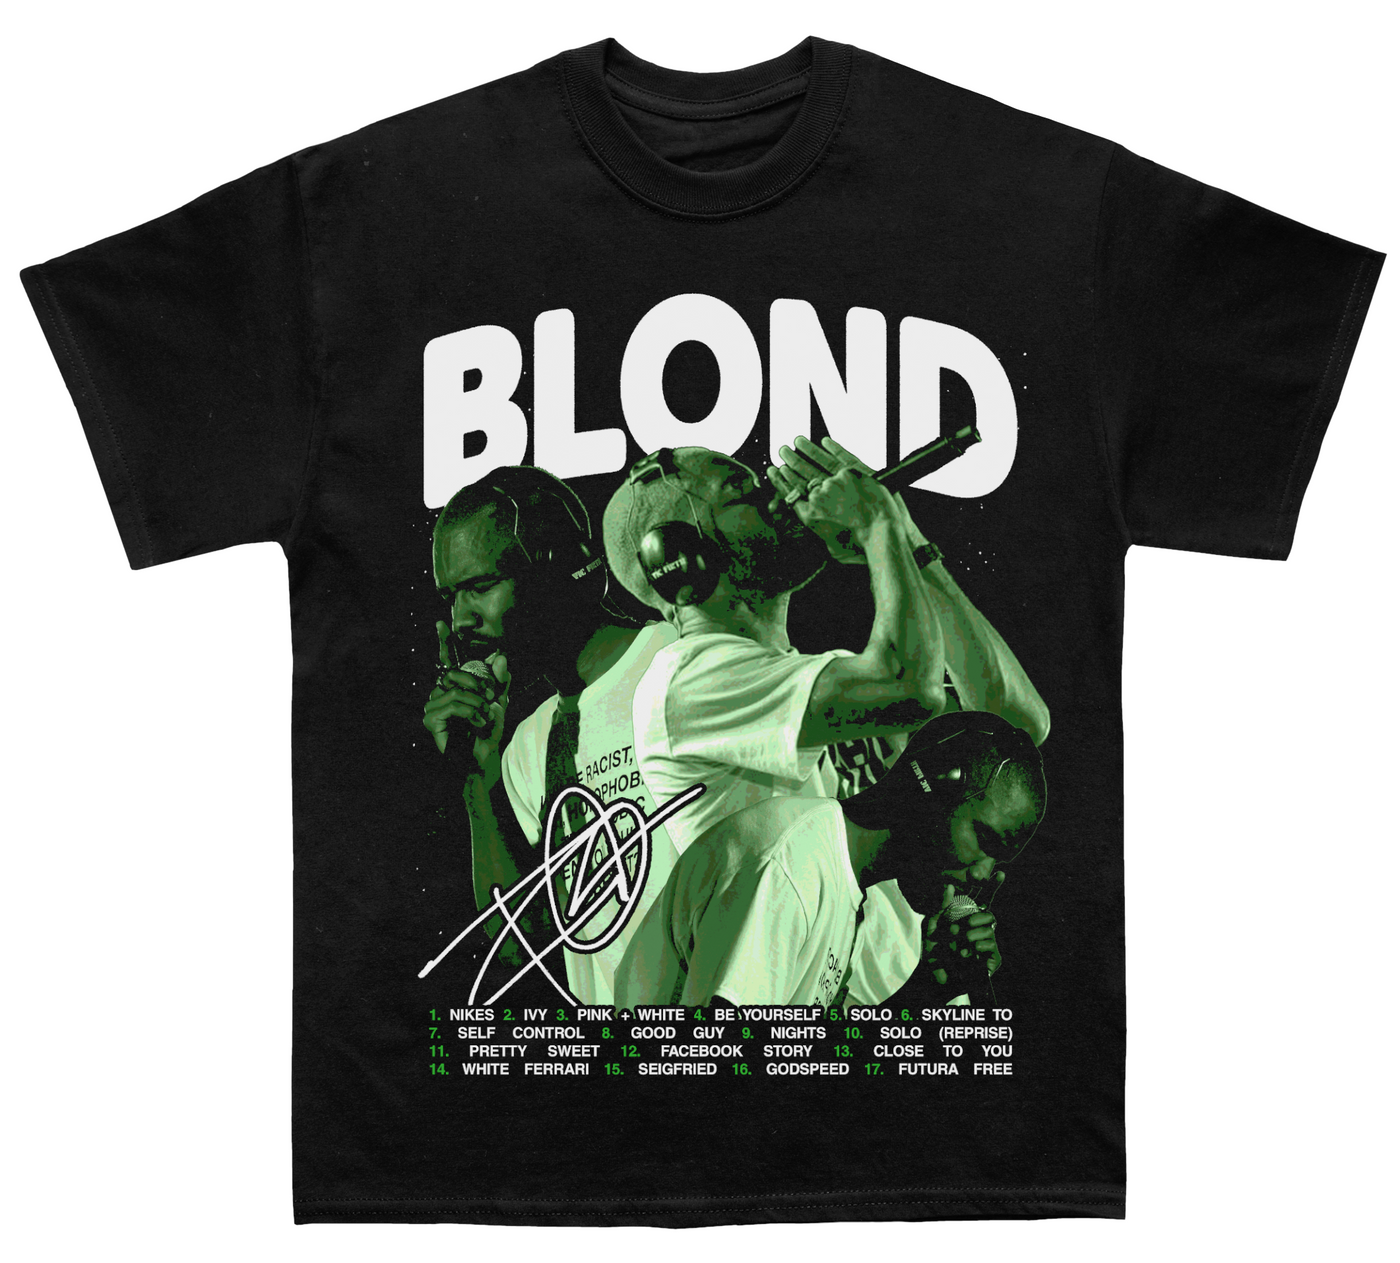 Frank Ocean Blond Album T-shirt